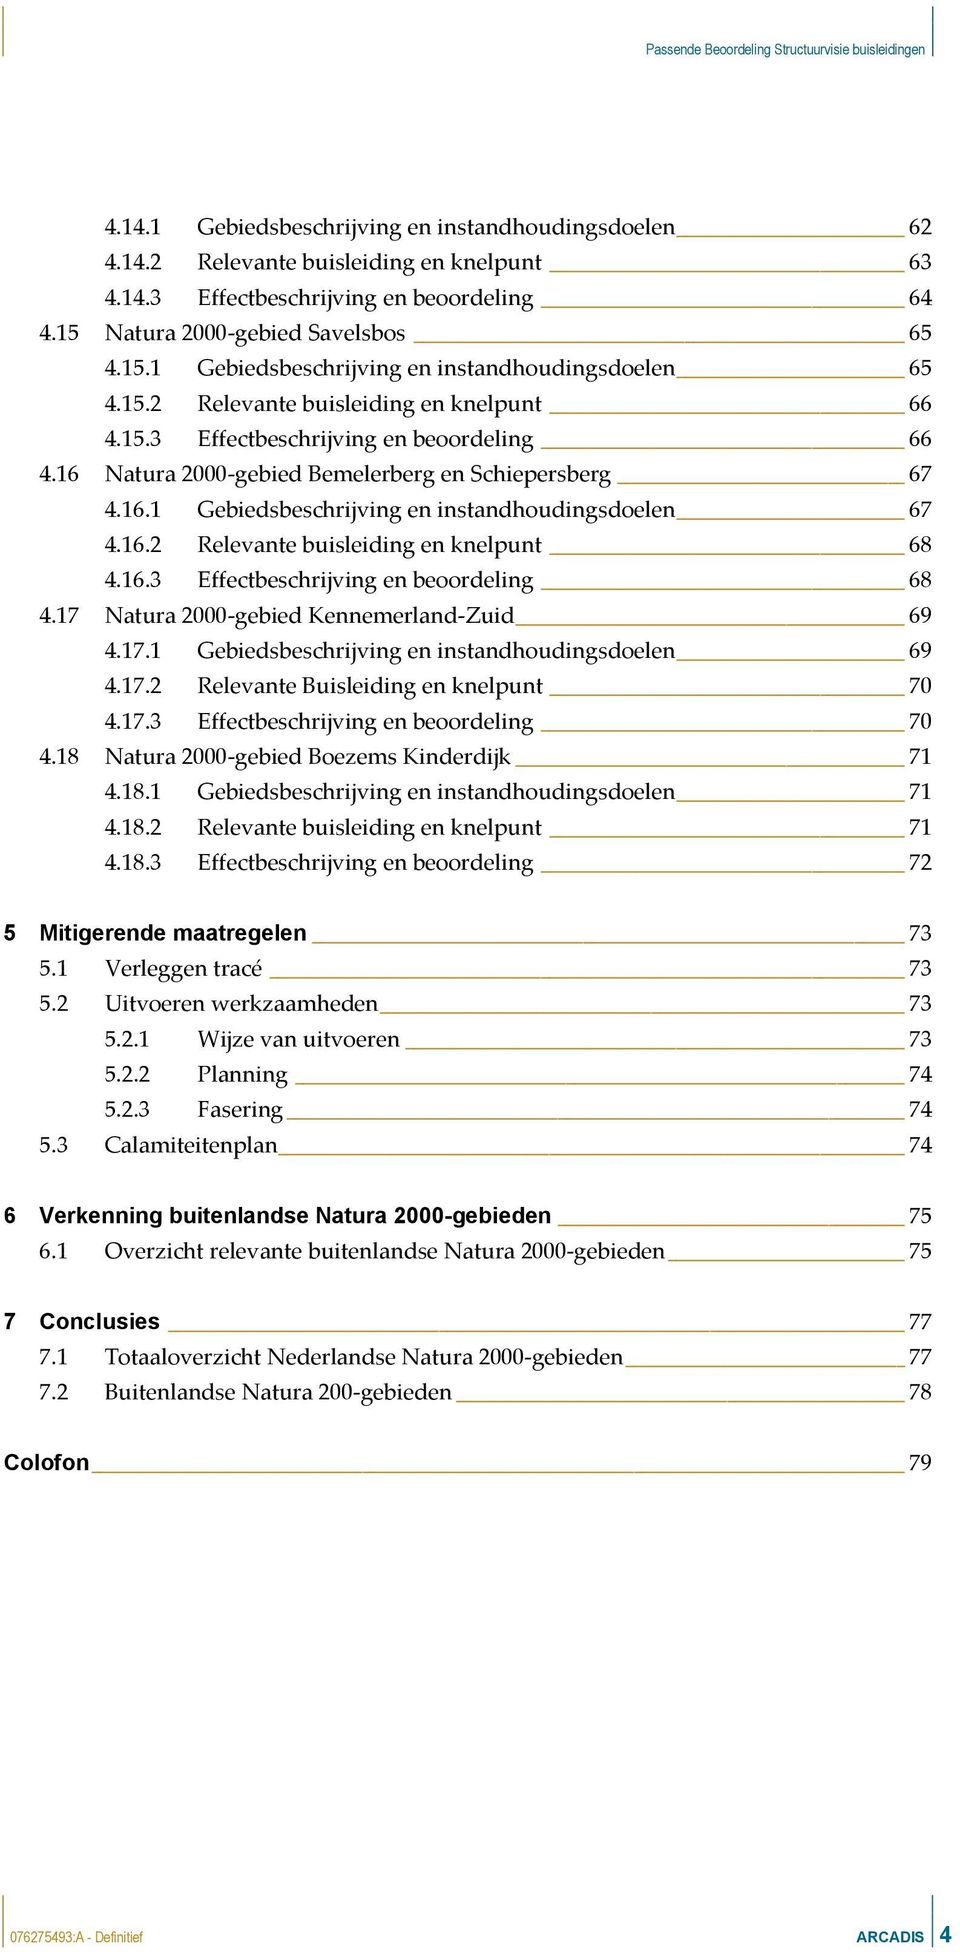 16.3 Effectbeschrijving en beoordeling 68 4.17 Natura 2000-gebied Kennemerland-Zuid 69 4.17.1 Gebiedsbeschrijving en instandhoudingsen 69 4.17.2 Buisleiding en knelpunt 70 4.17.3 Effectbeschrijving en beoordeling 70 4.